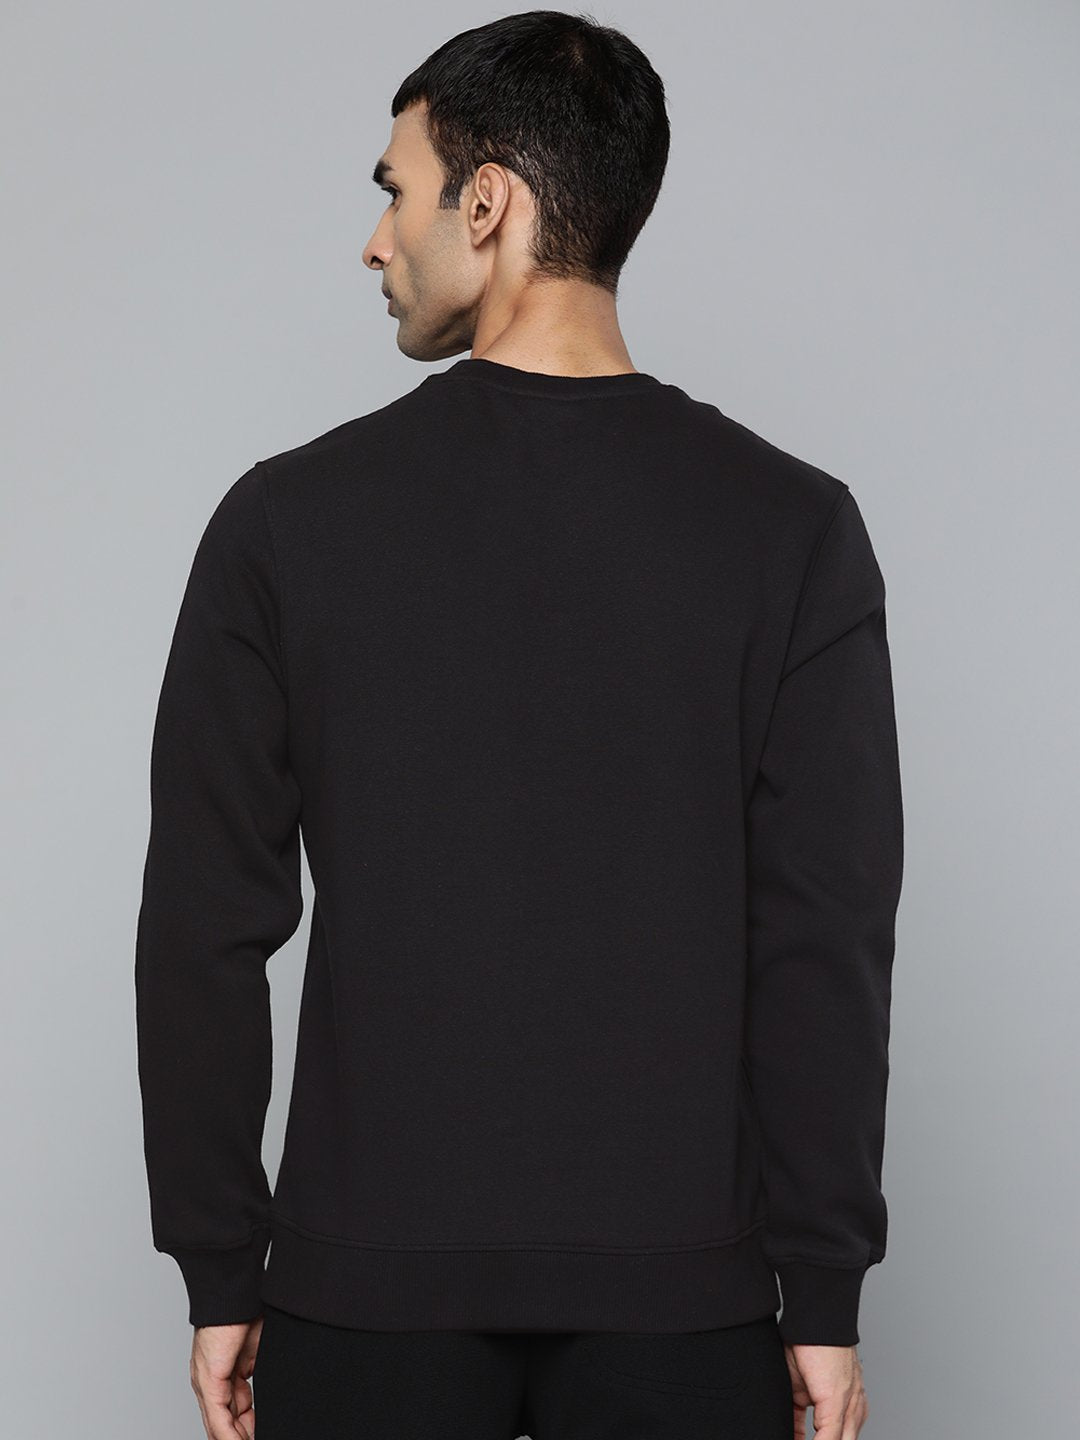 Alcis Men Casual Black Sweatshirts